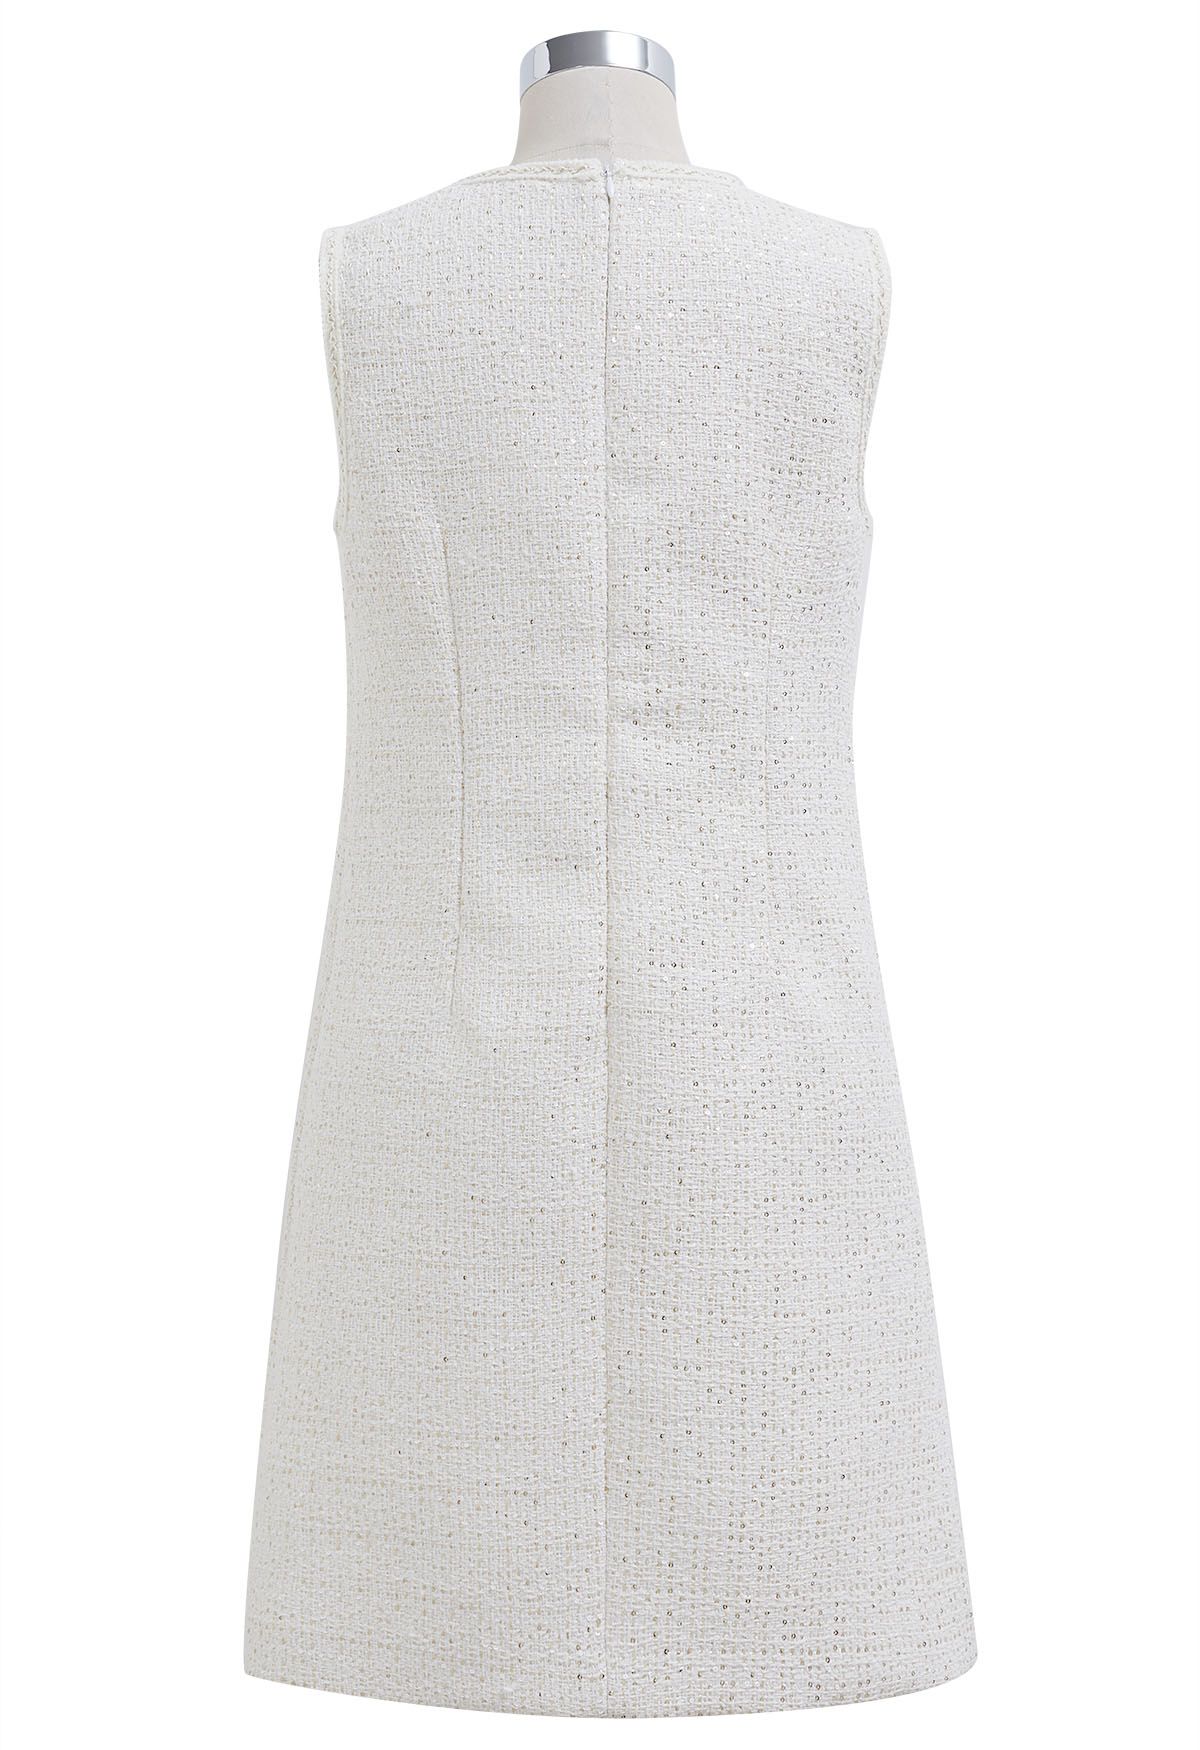 Ärmelloses Tweedkleid mit Paillettenstickerei in Weiß